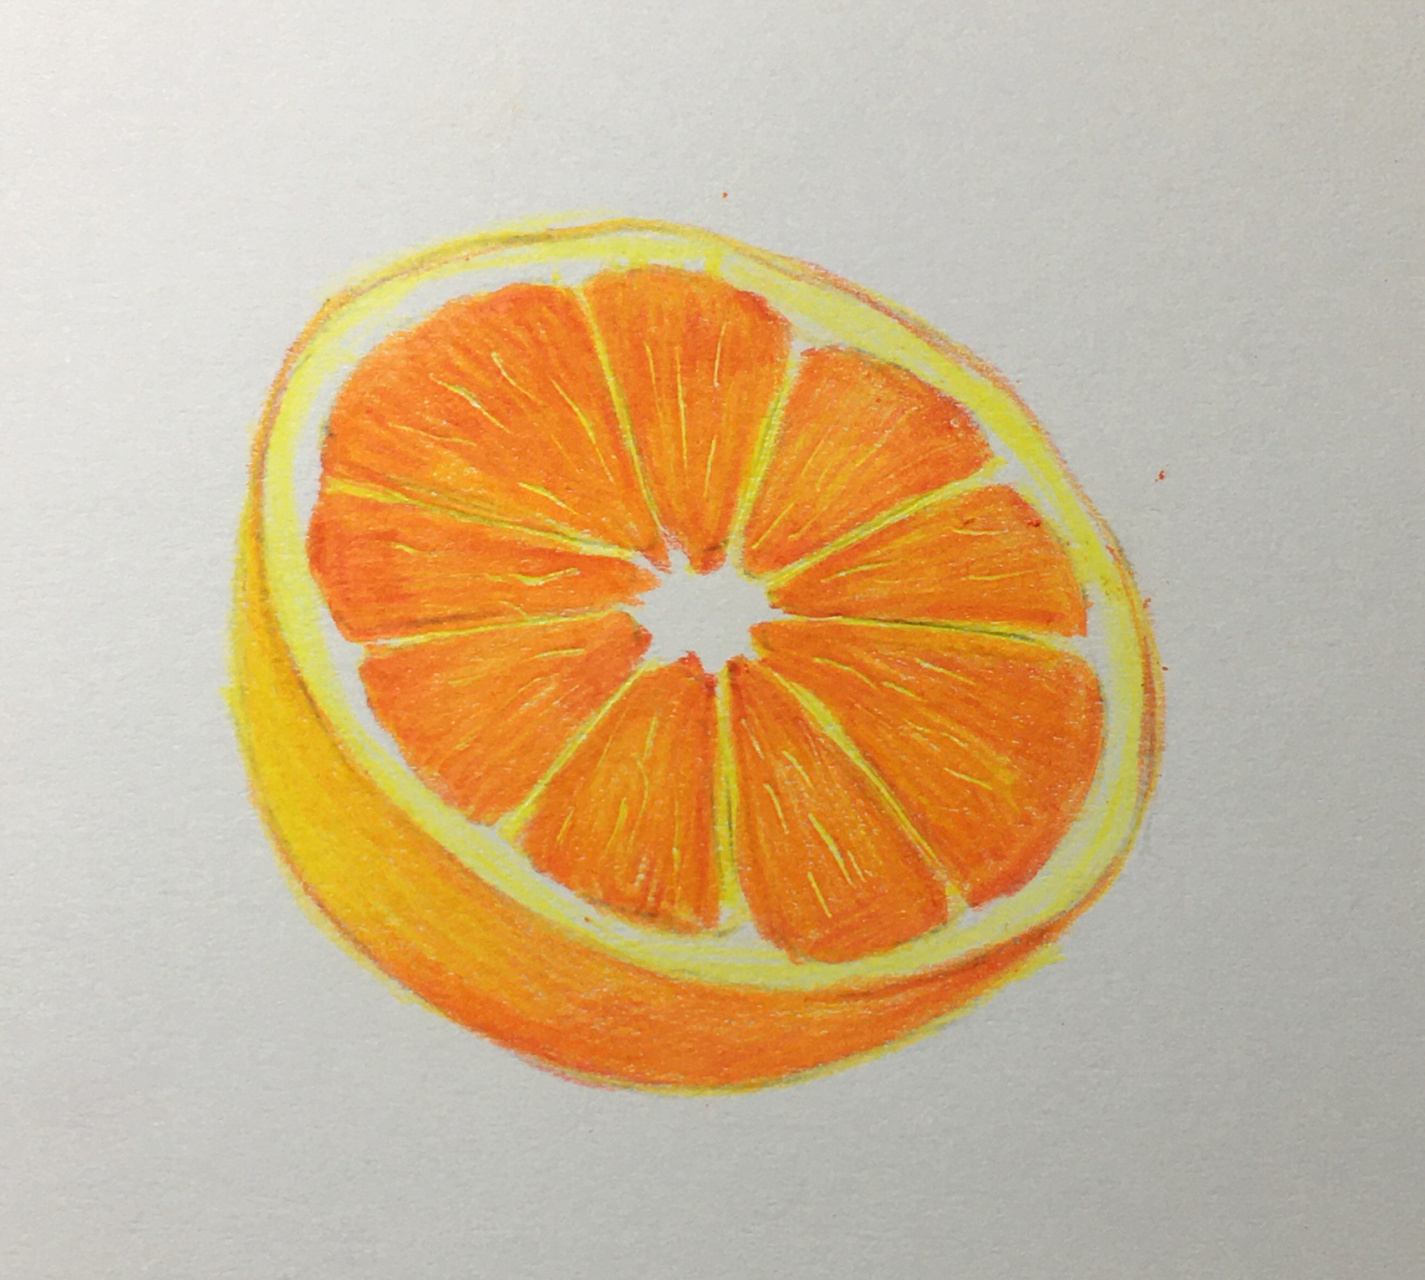 彩铅画,橙子92教程分享(详细过程画法) 分享一个彩铅橙子92的详细